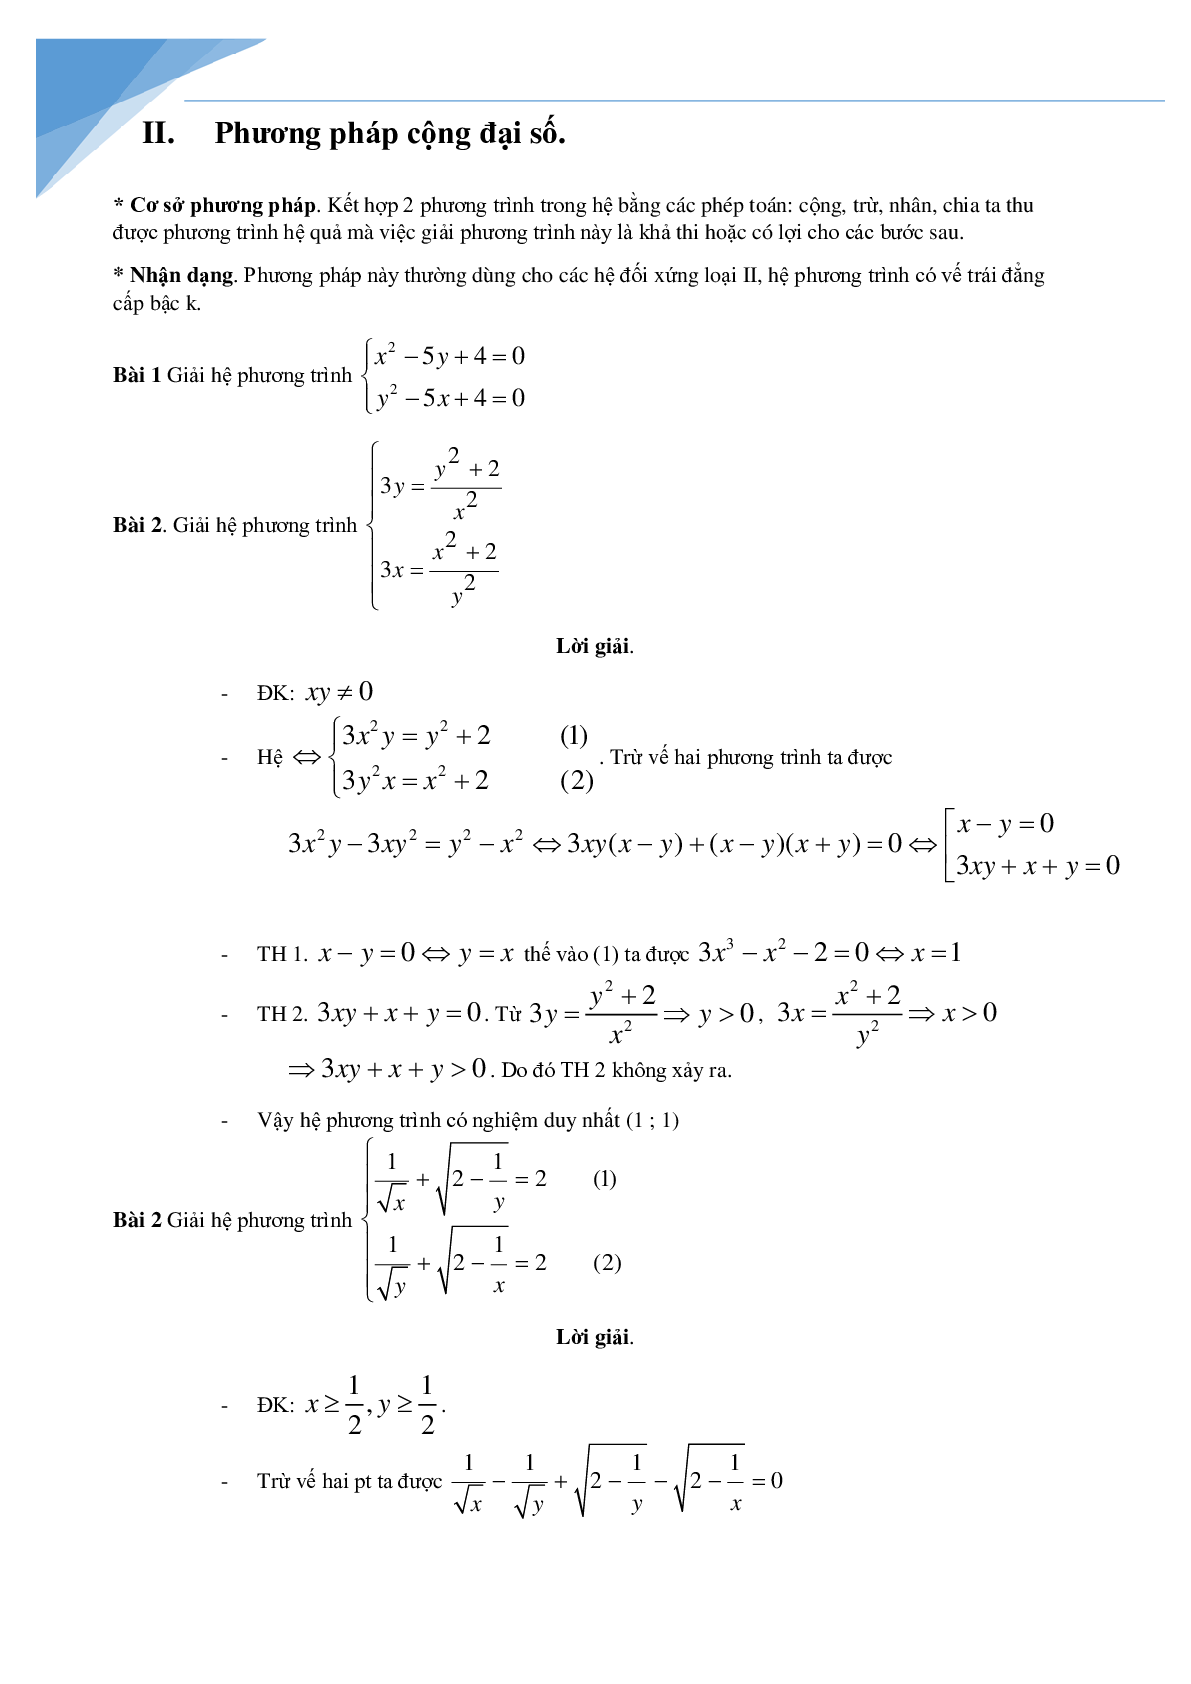 Chuyên đề hệ phương trình bồi dưỡng học sinh giỏi toán (trang 4)